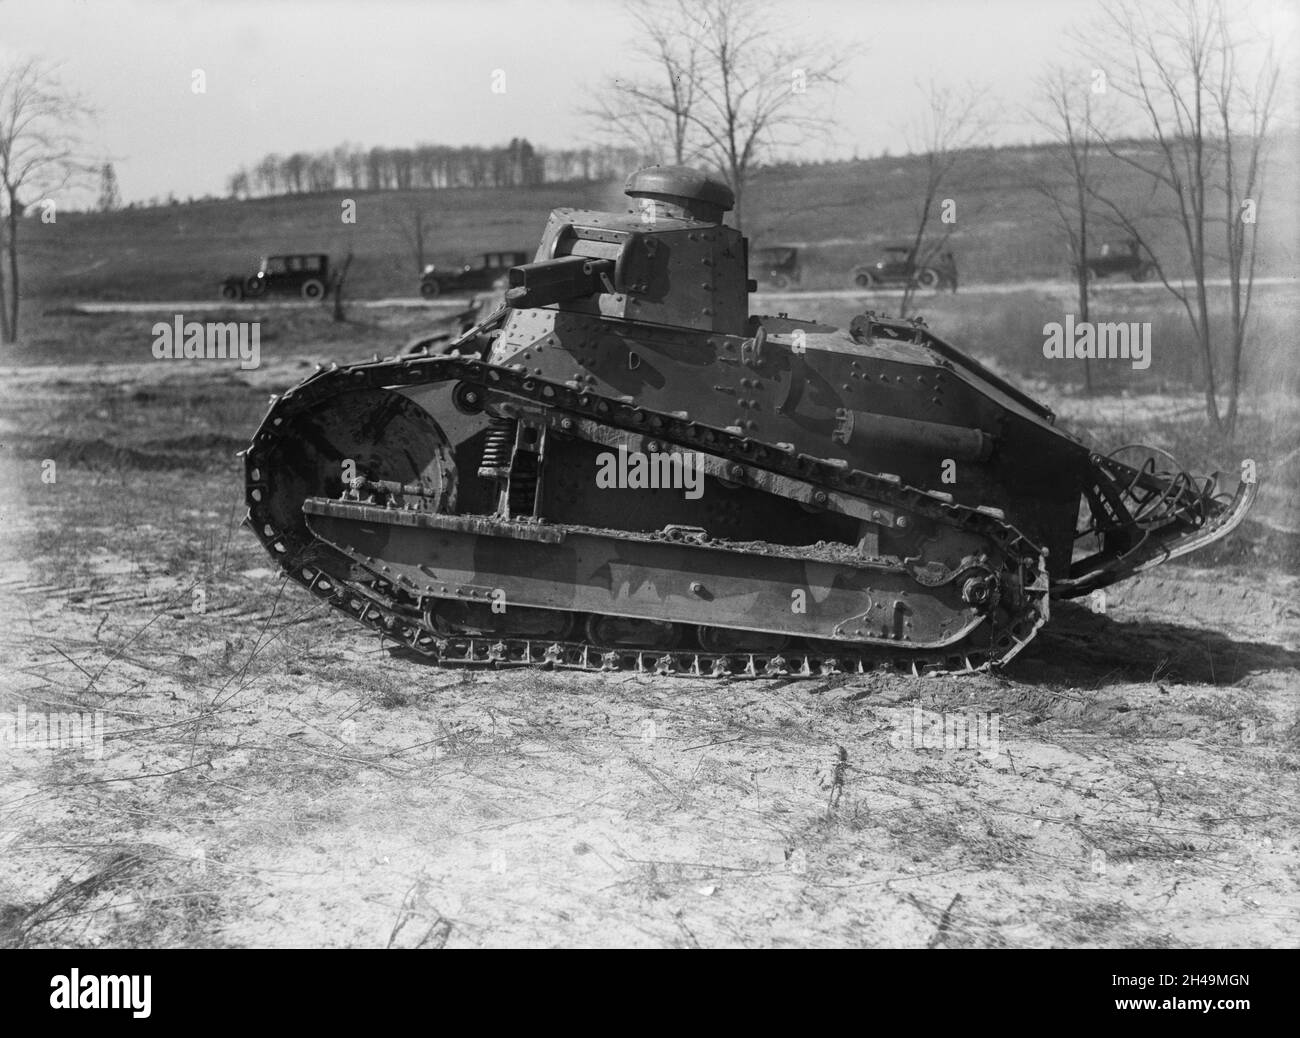 Ein Vintage-Foto um 1918 von einem amerikanischen M1917 leichten Tank eine Lizenz gebaut Kopie des französischen Renault FT Tank. Die M1917 nahmen an keinem Kampf Teil, wurden aber im Inland eingesetzt, um verschiedene Unruhen und Unruhen zu unterdrücken. Stockfoto